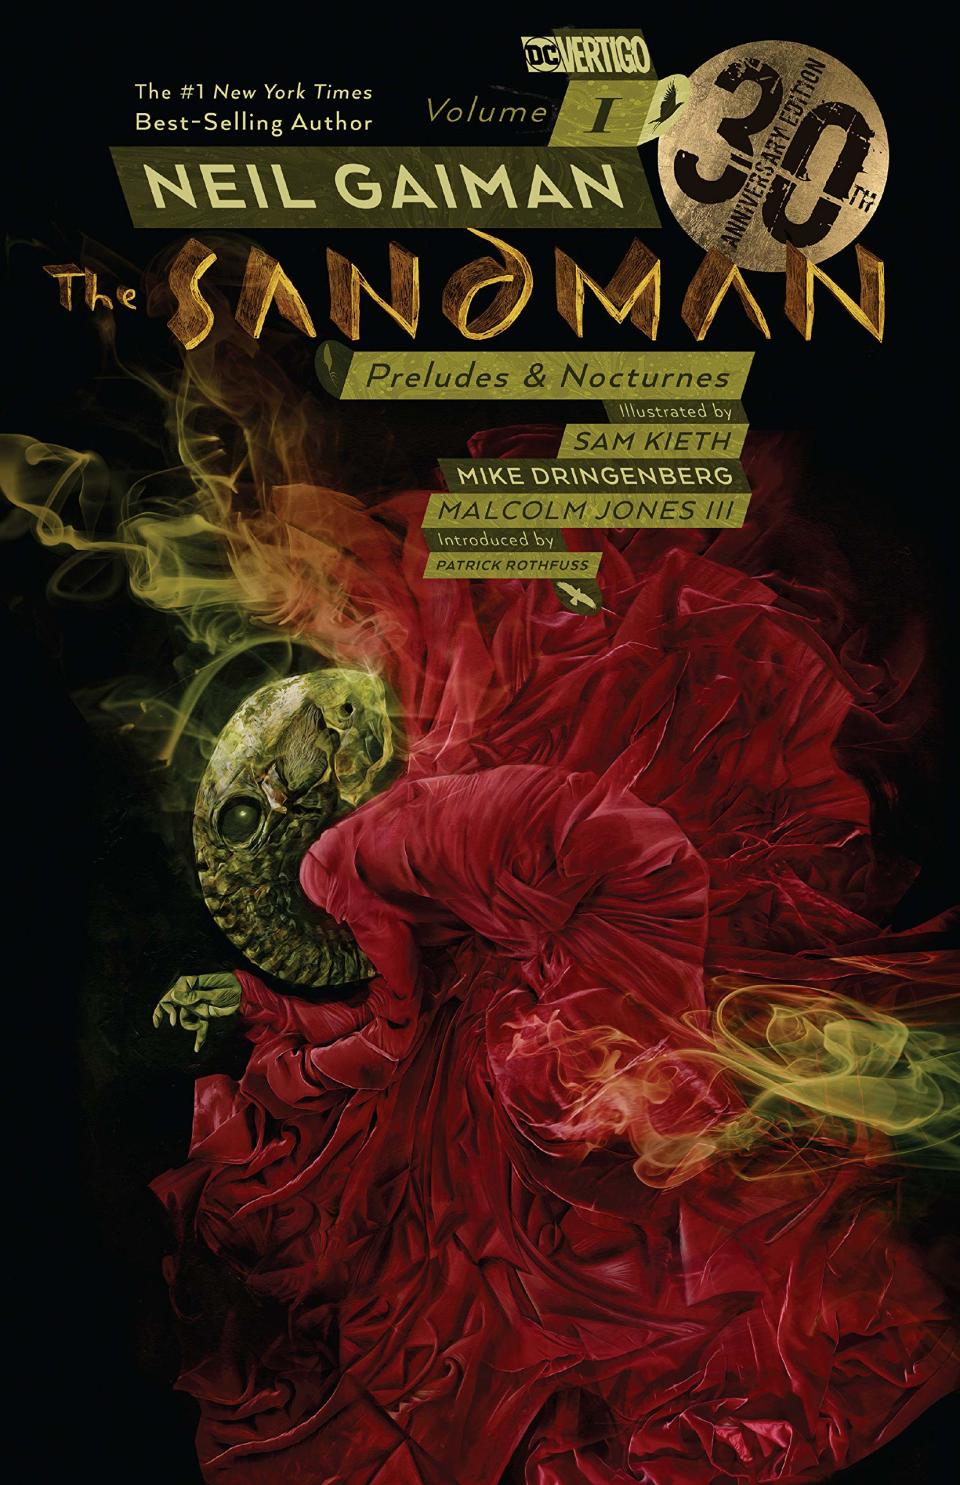 "Sandman Volume 1: Preludes & Nocturnes," written by Neil Gaiman